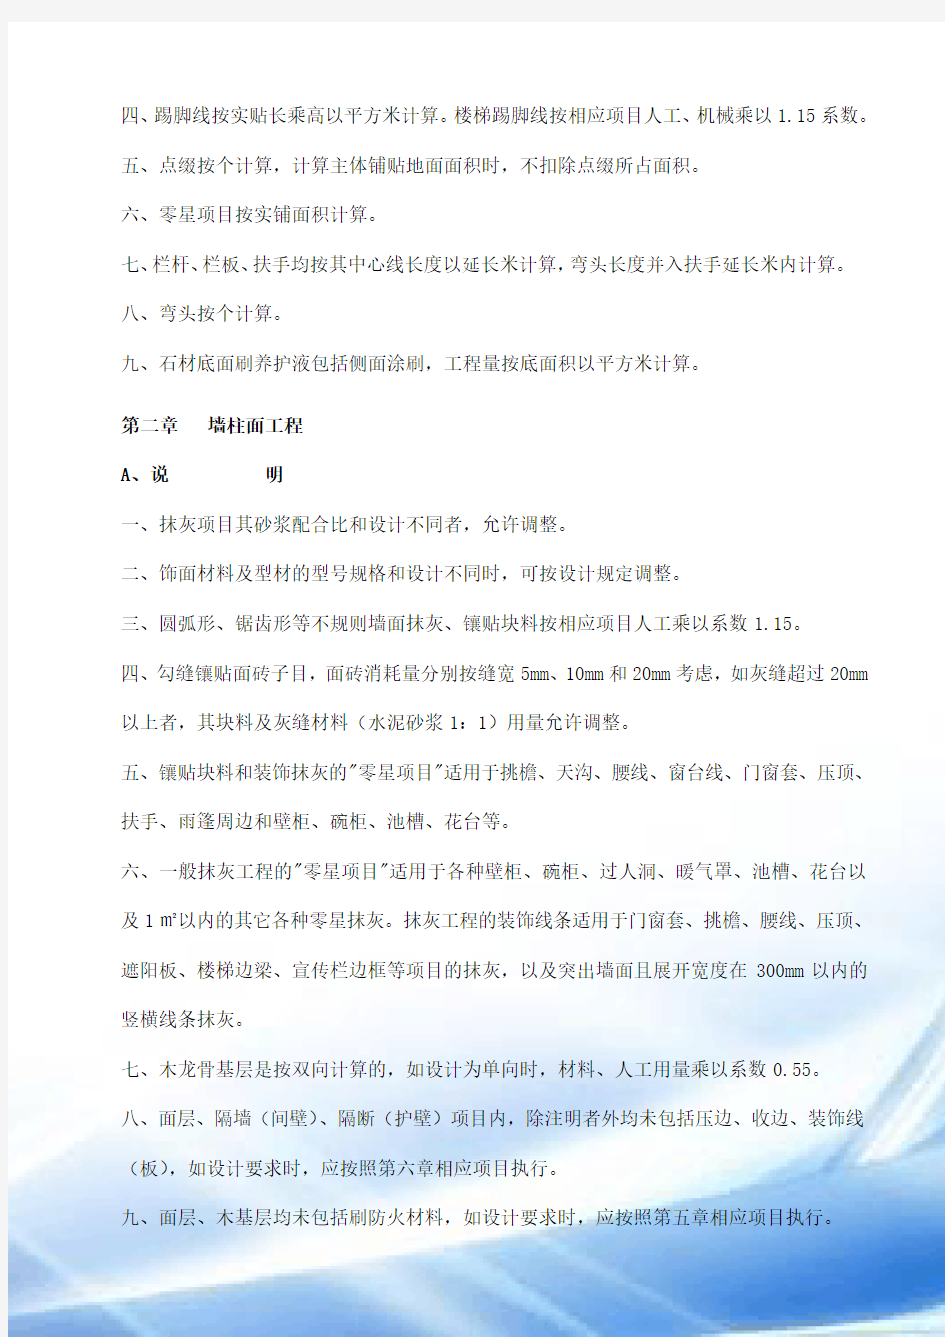 2014湖南省装饰装修工程定额说明及计算规则